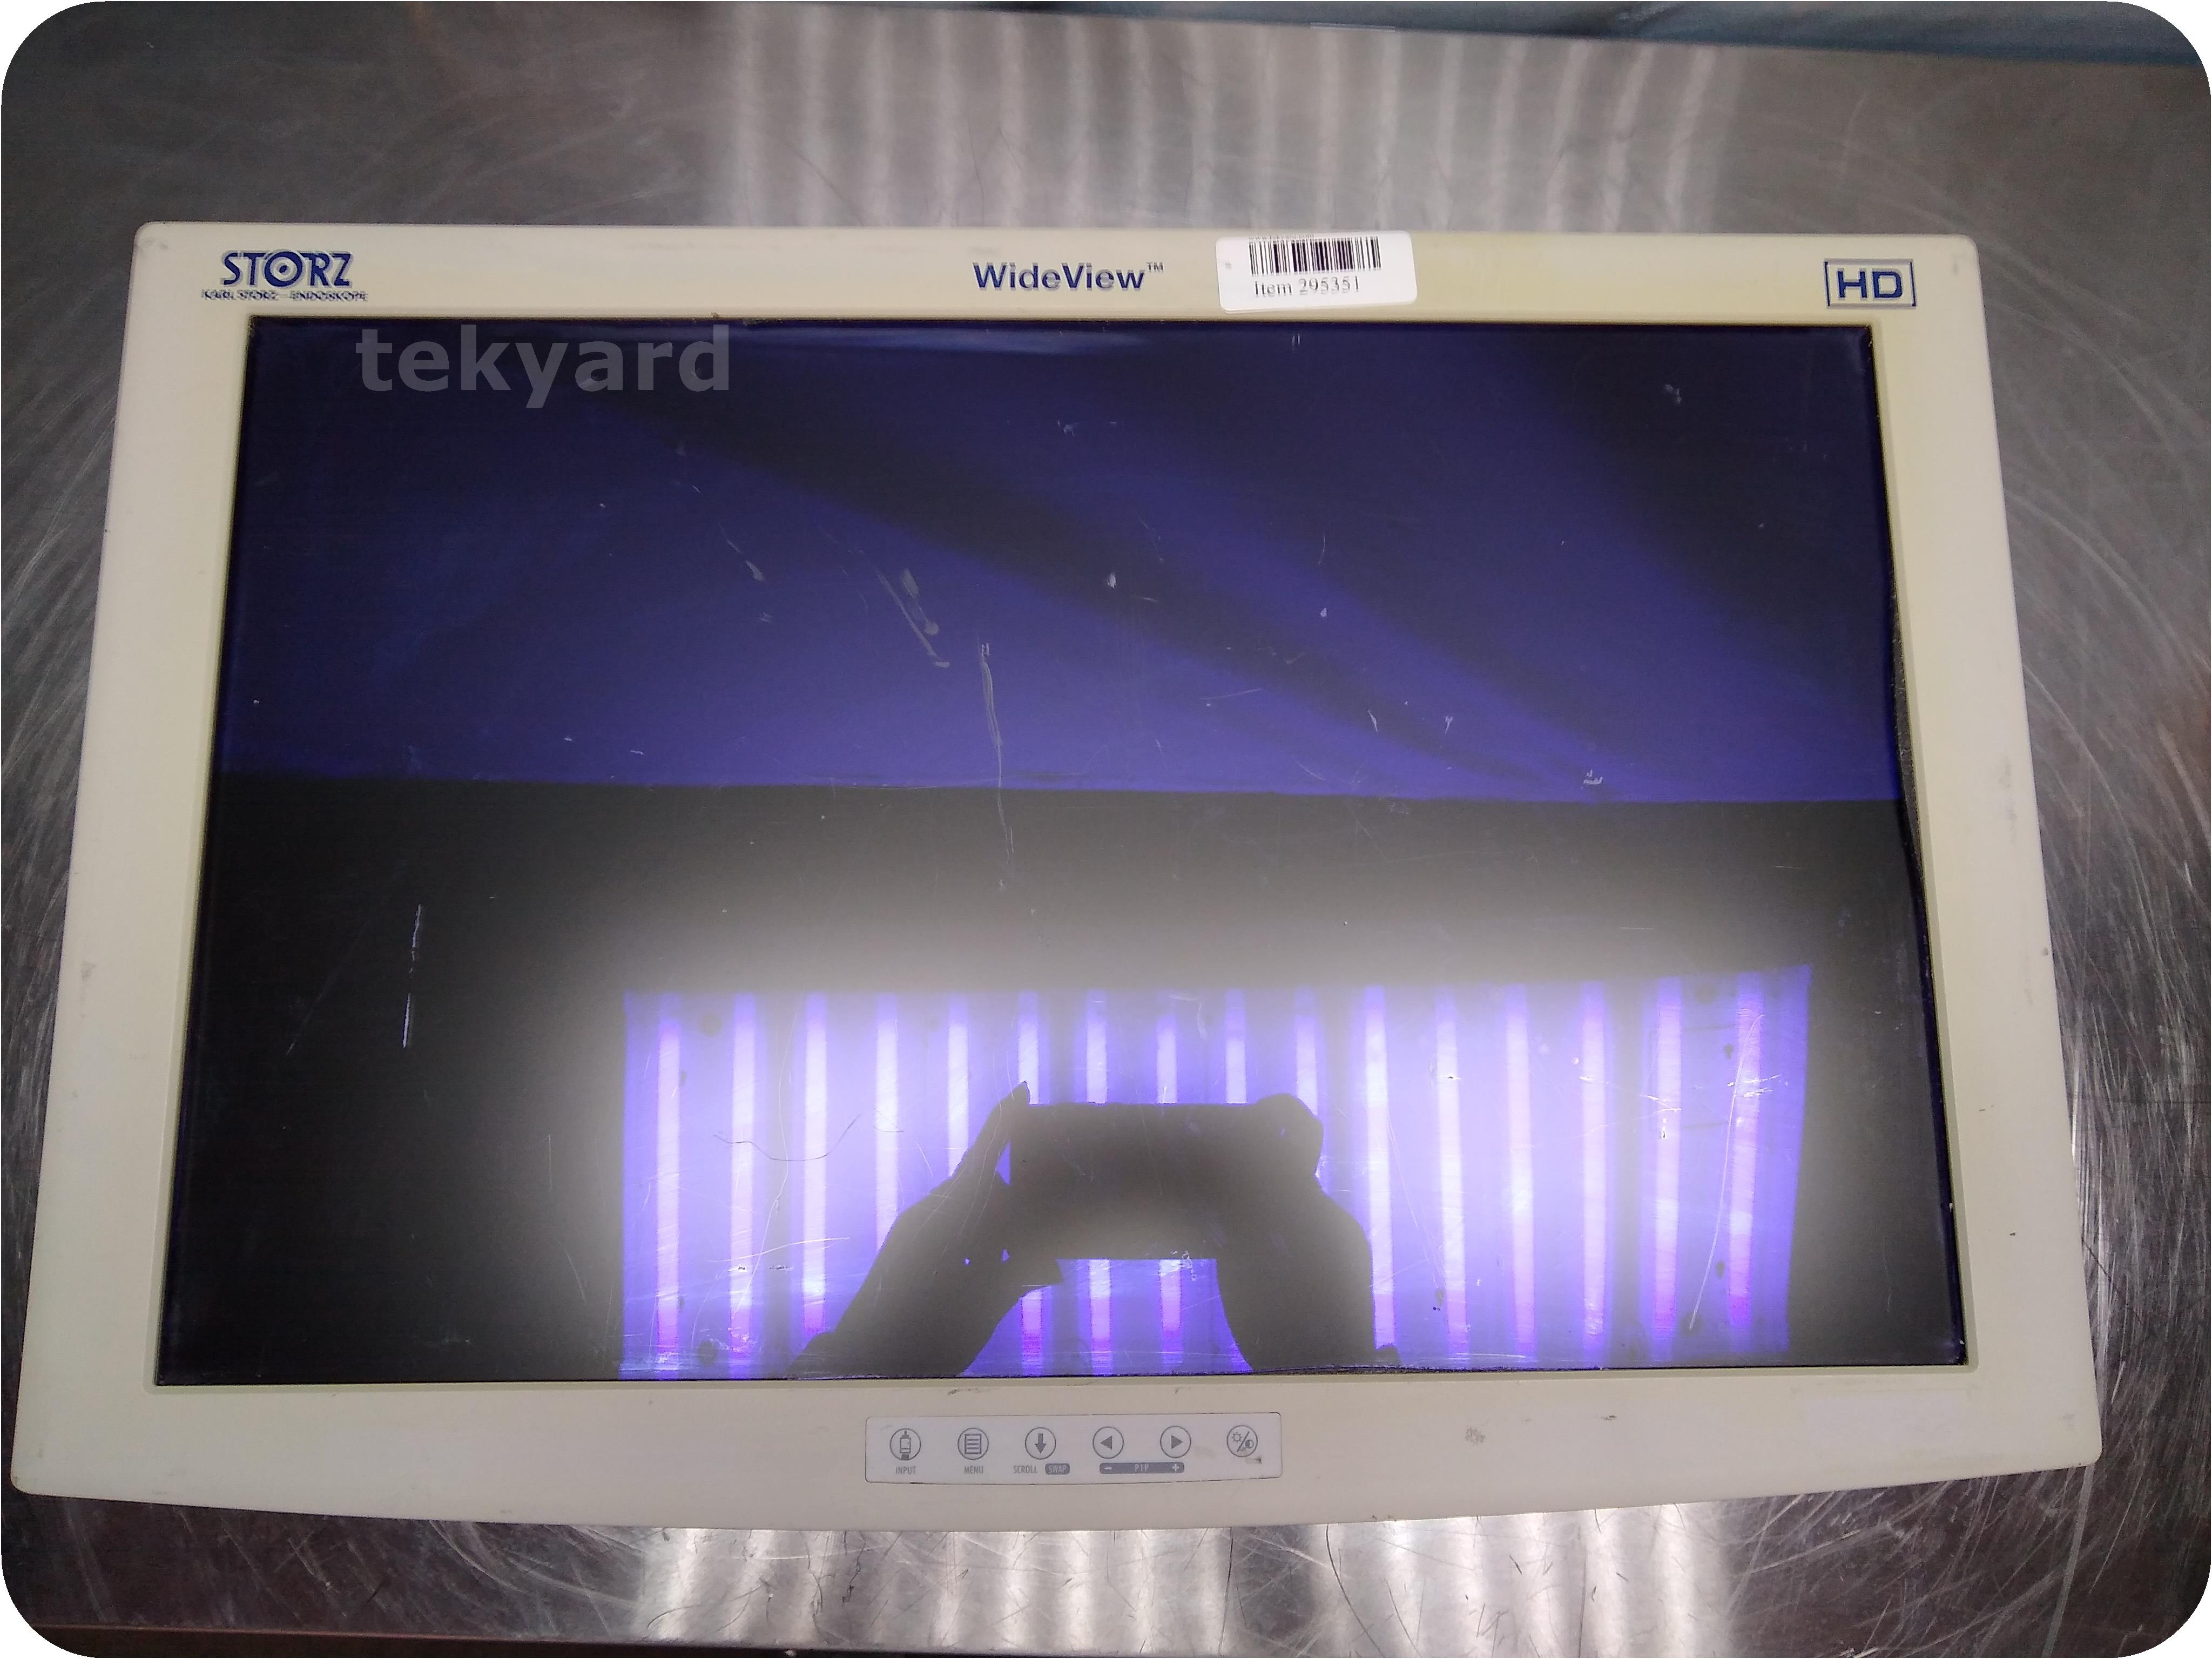 tekyard, LLC. - 295351-Karl Storz SC-WU24-A1515 WideView HD Color